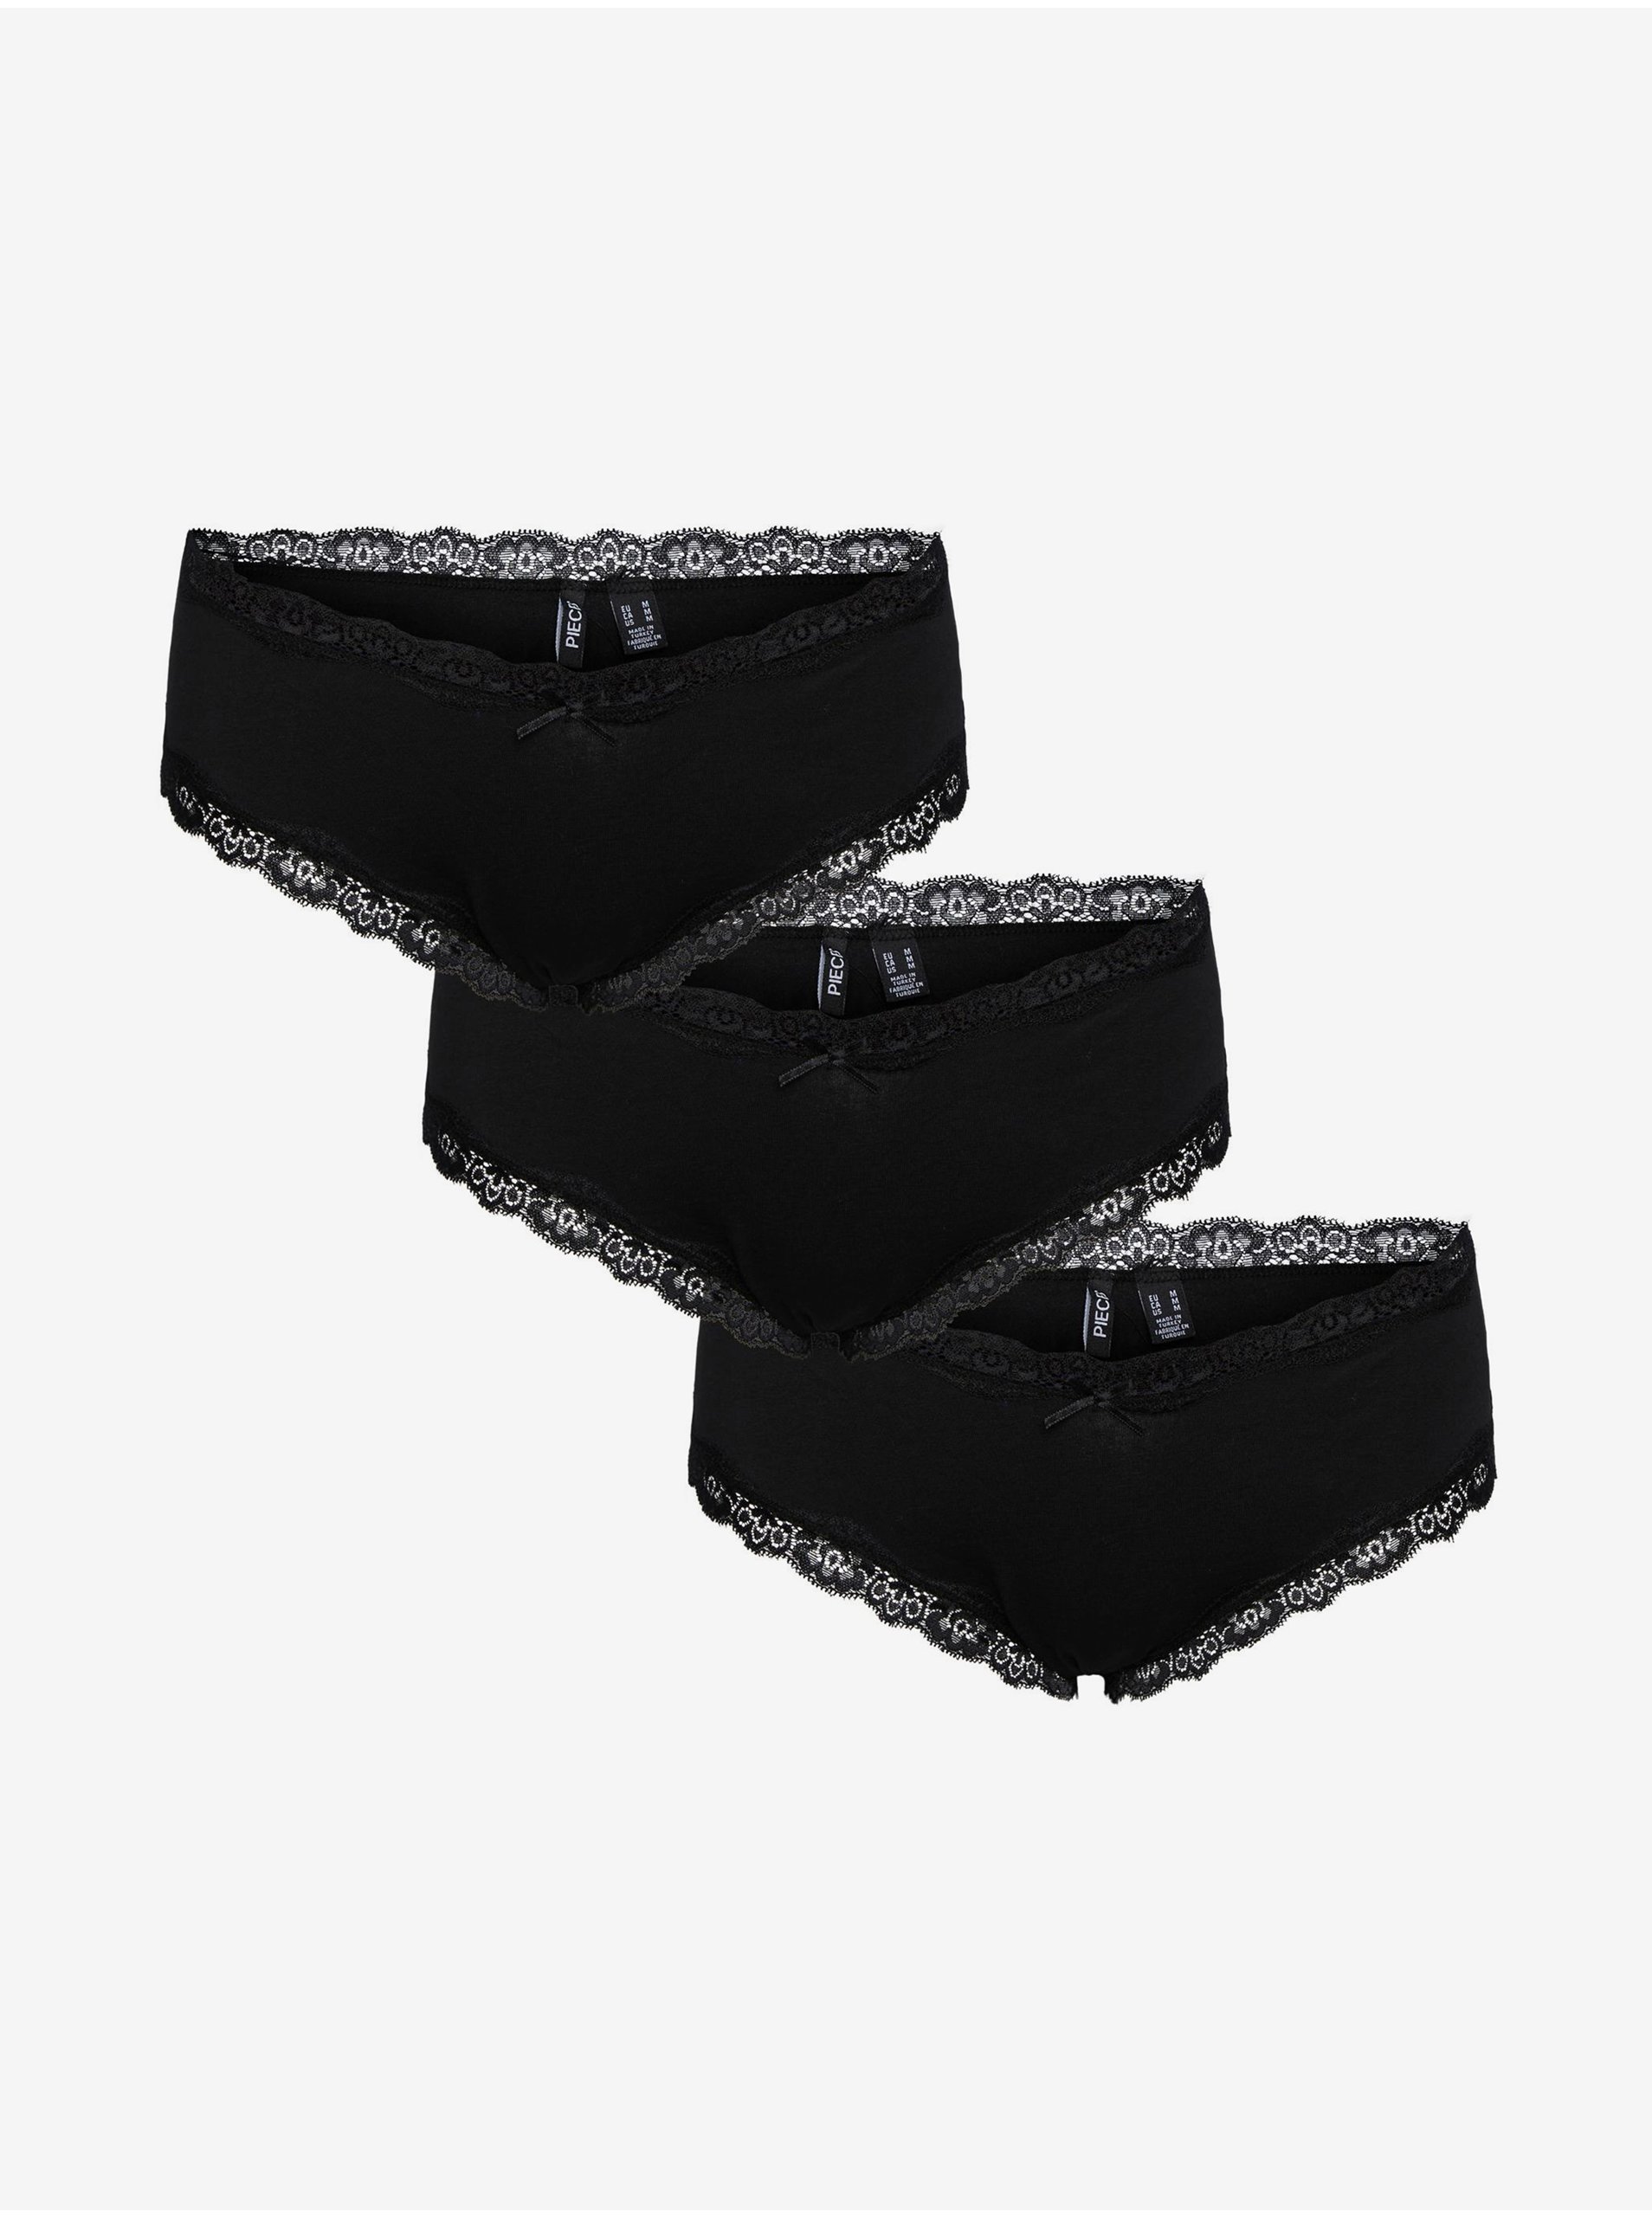 Lacno Súprava troch dámskych nohavičiek v čiernej farbe s čipkou Pieces Nola